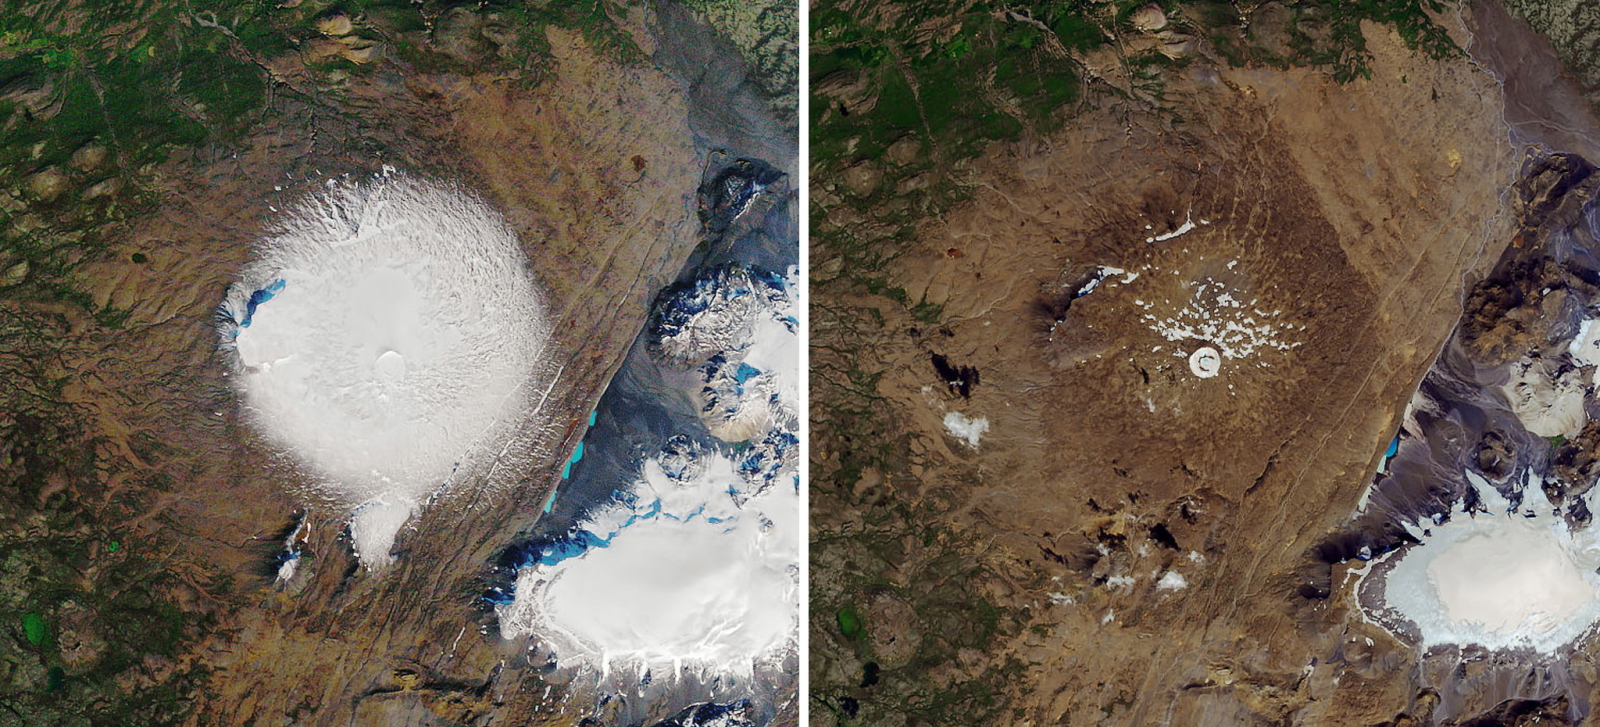 Zdjęcie lodowca Okjokull w Zachodniej Islandii zrobione przez NASA -po lewej w 1986 i po prawej 2019 EPA/NASA EARTH OBSERVATORY 